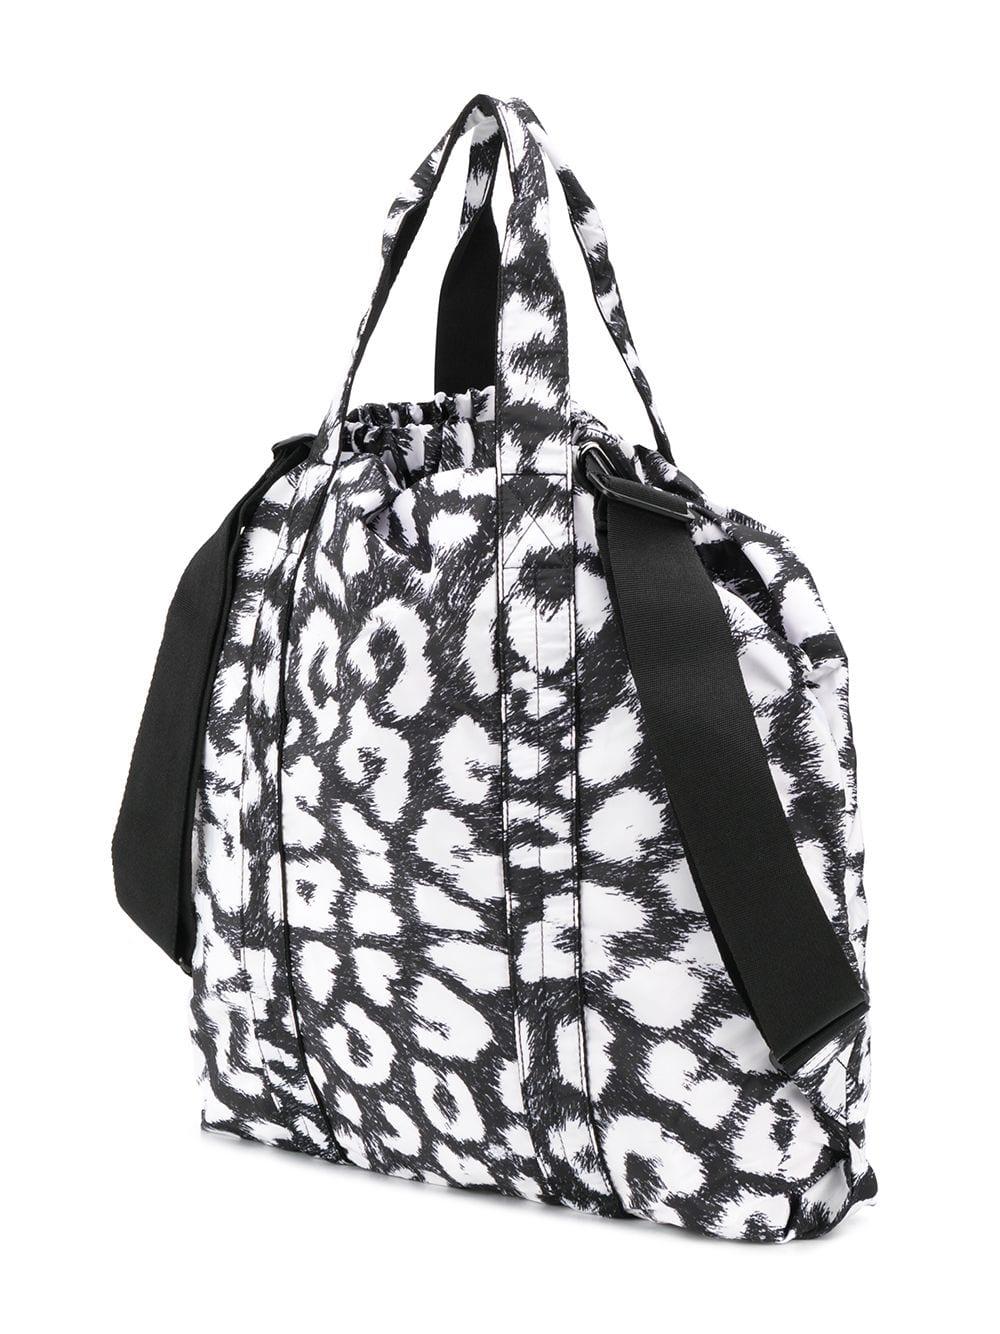 adidas By Stella McCartney Synthetic Leopard Print Gym Bag in Black - Lyst